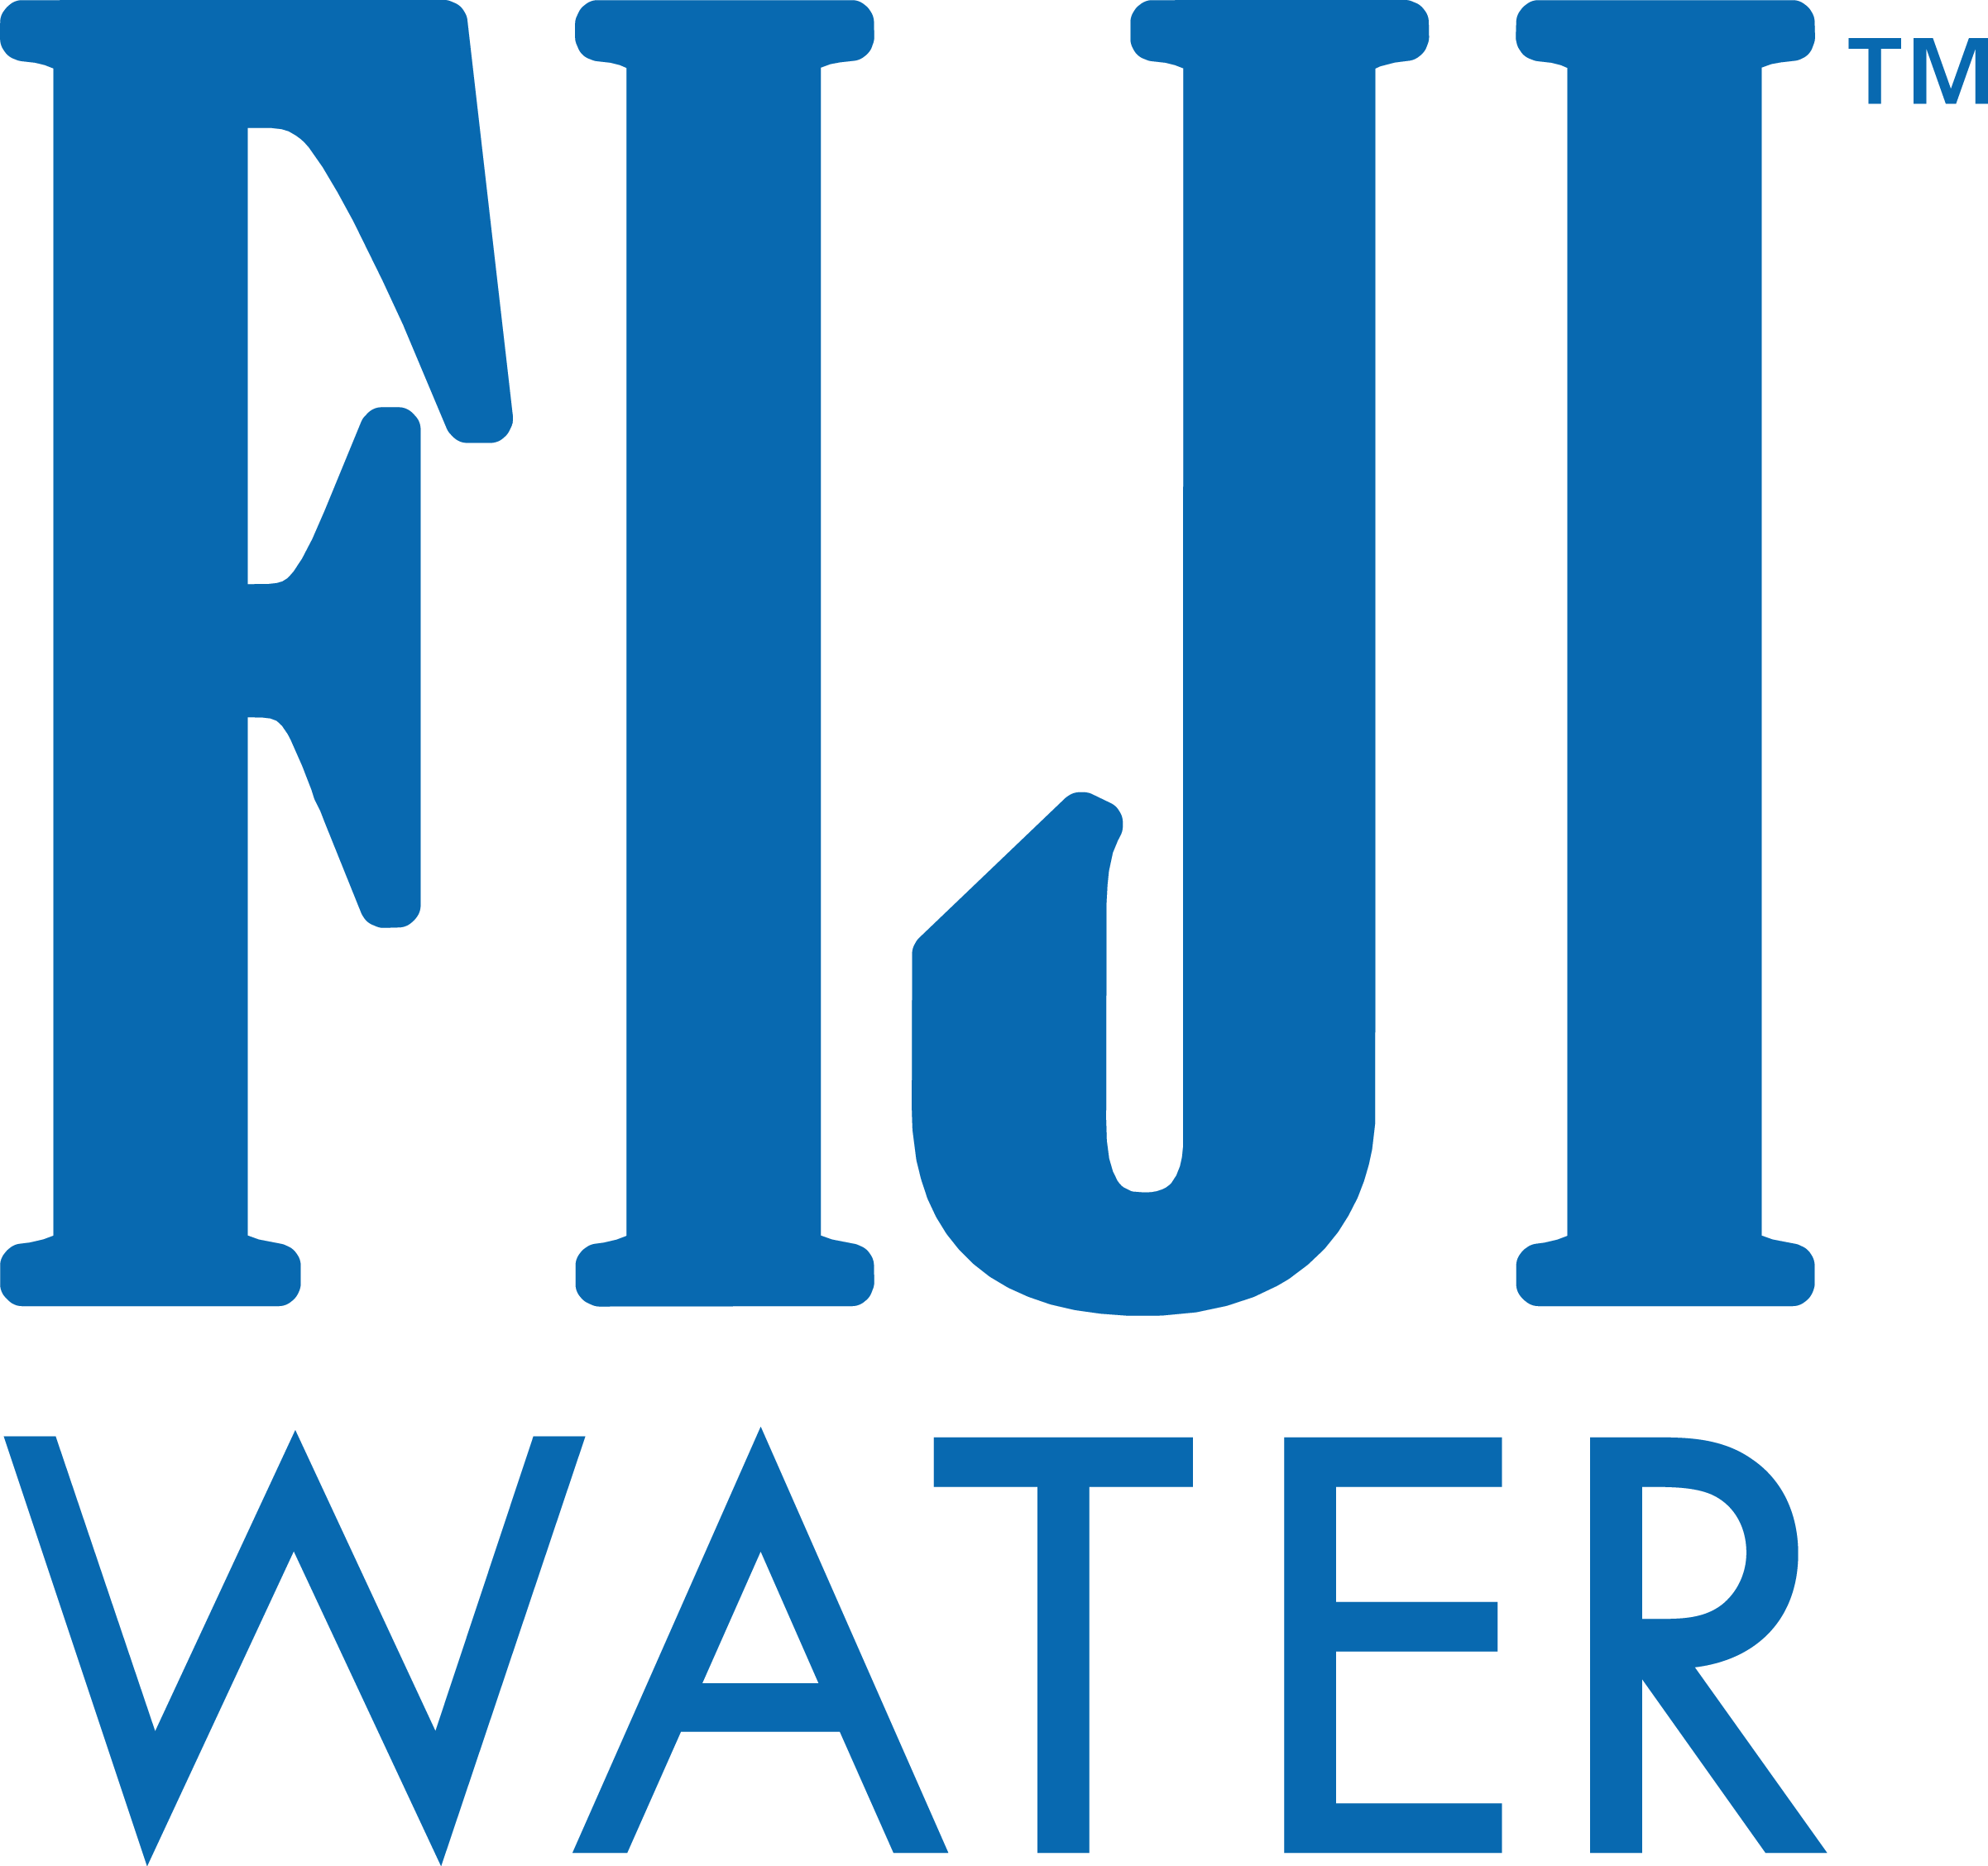 FIJI Water 斐濟天然深層礦泉水 廠商列表 開國有限公司國際休閒食品展